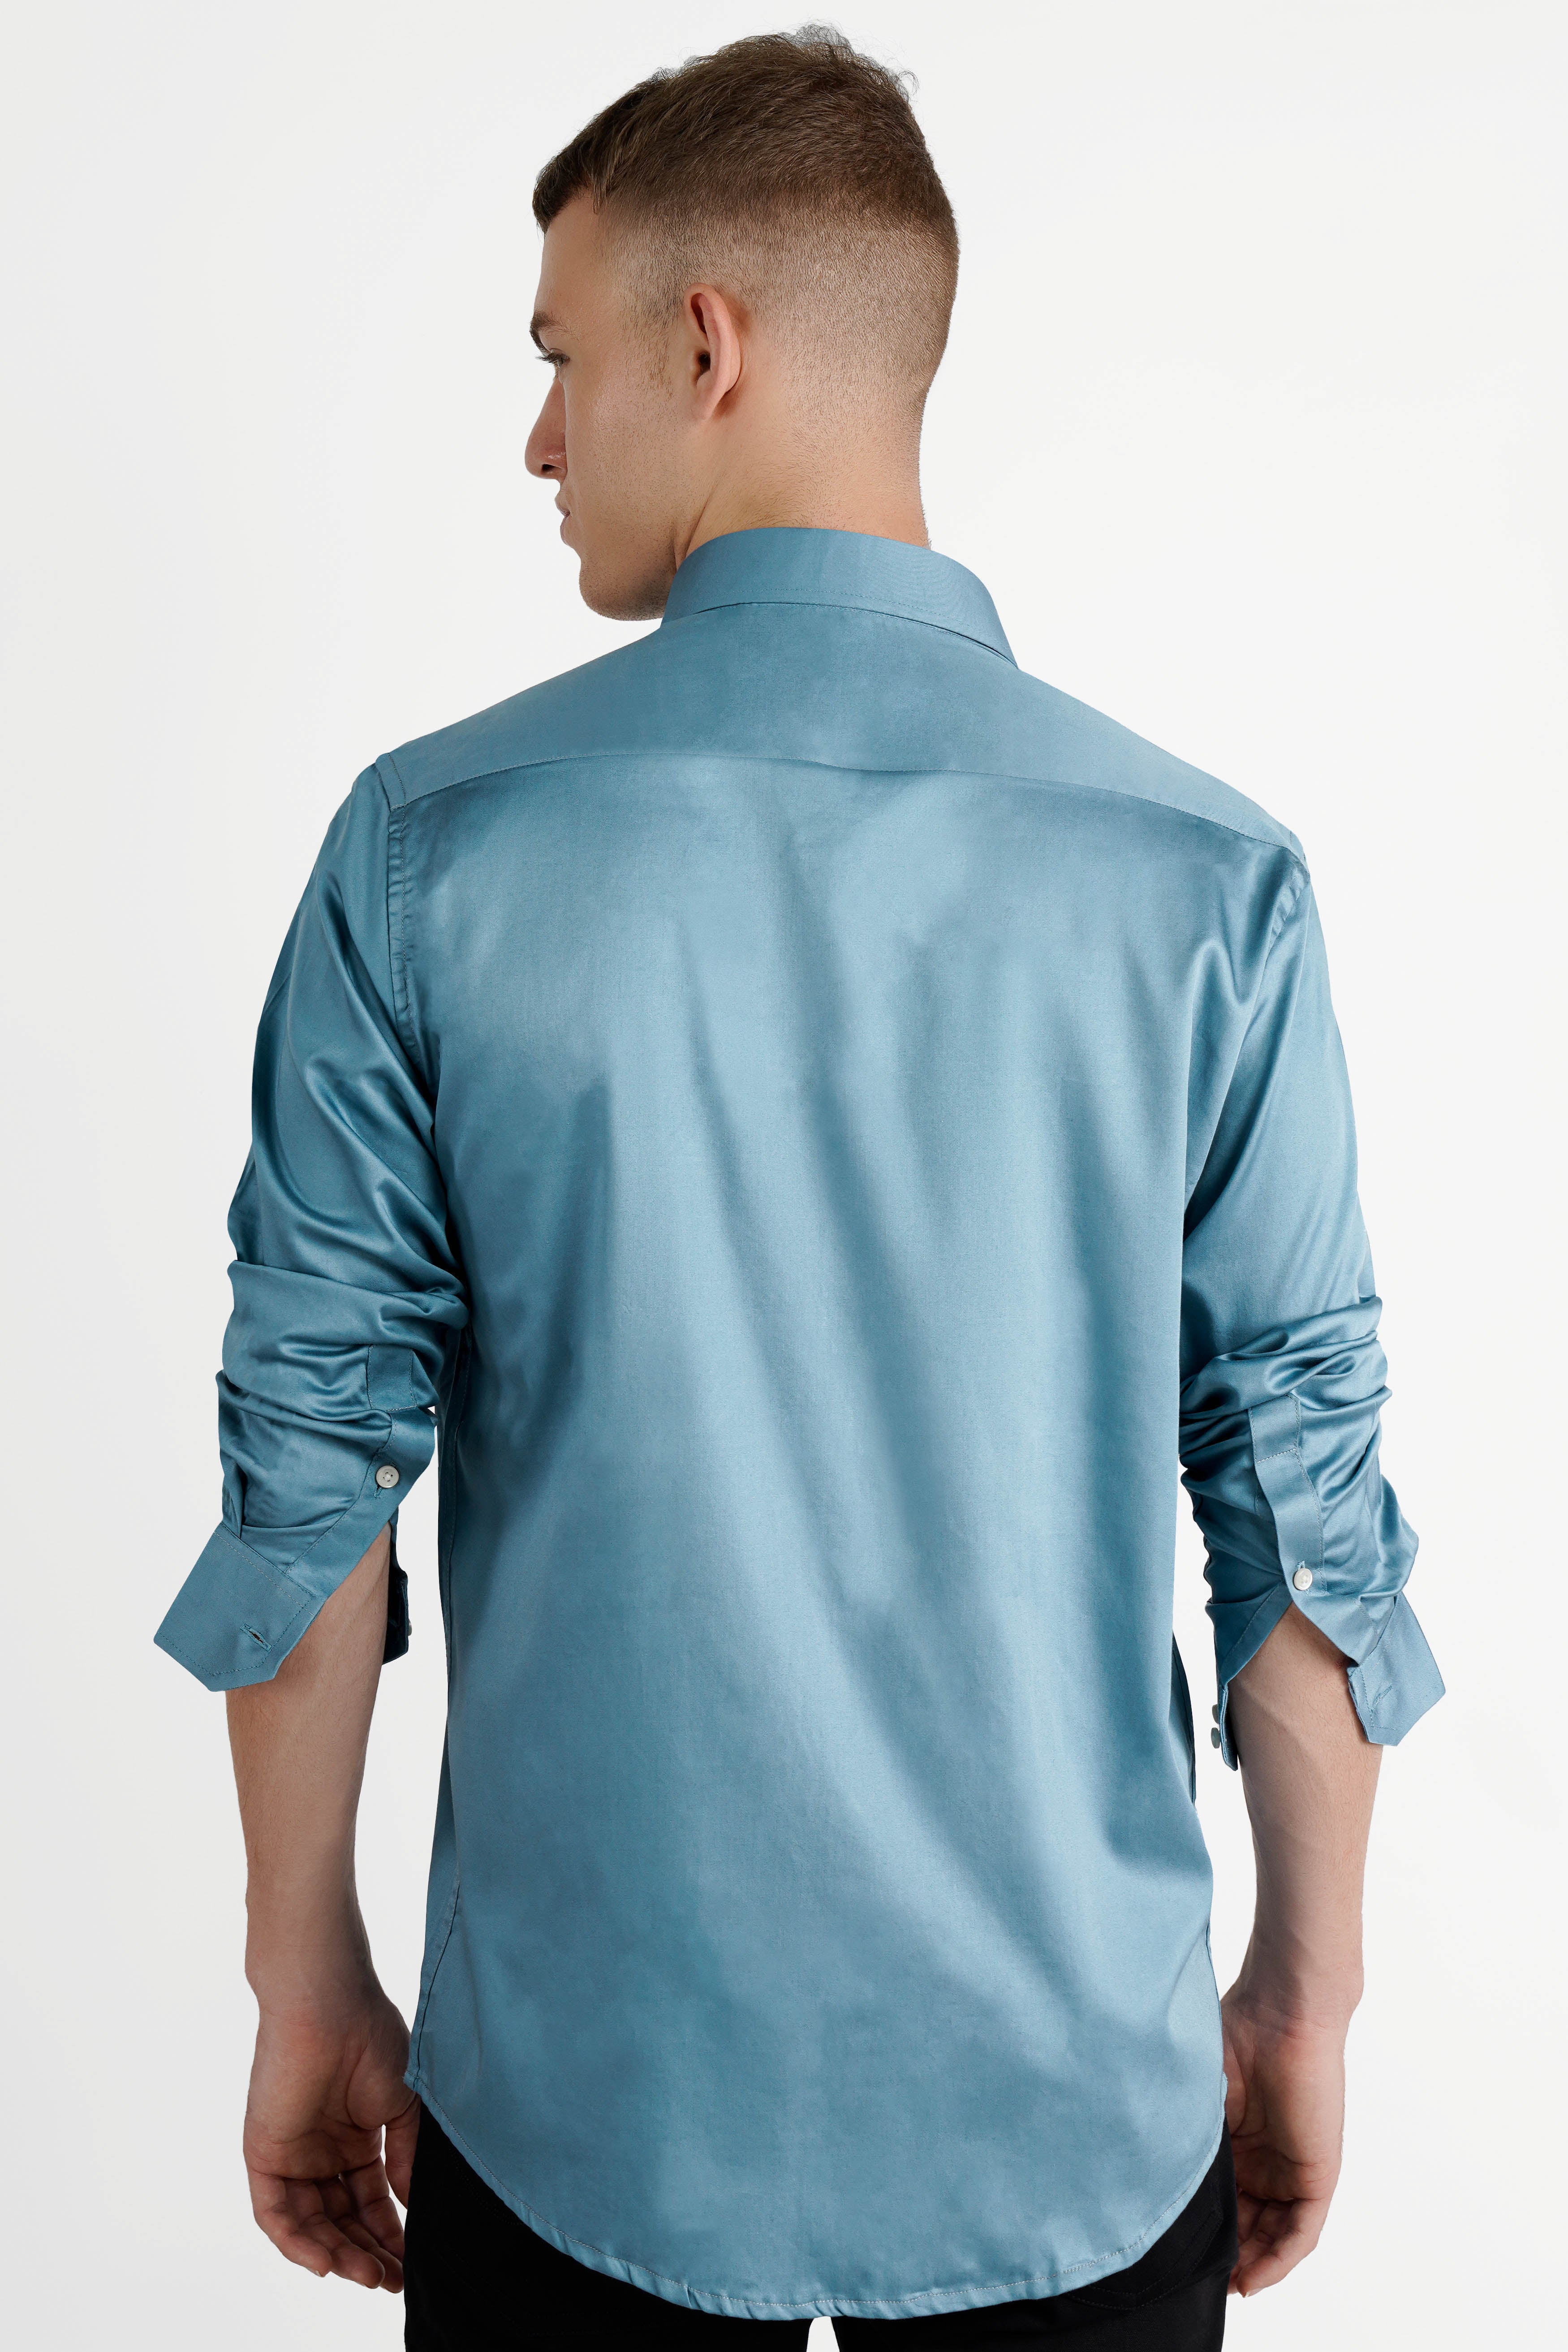 Bluish Cyan Blue Super Soft Premium Cotton Shirt